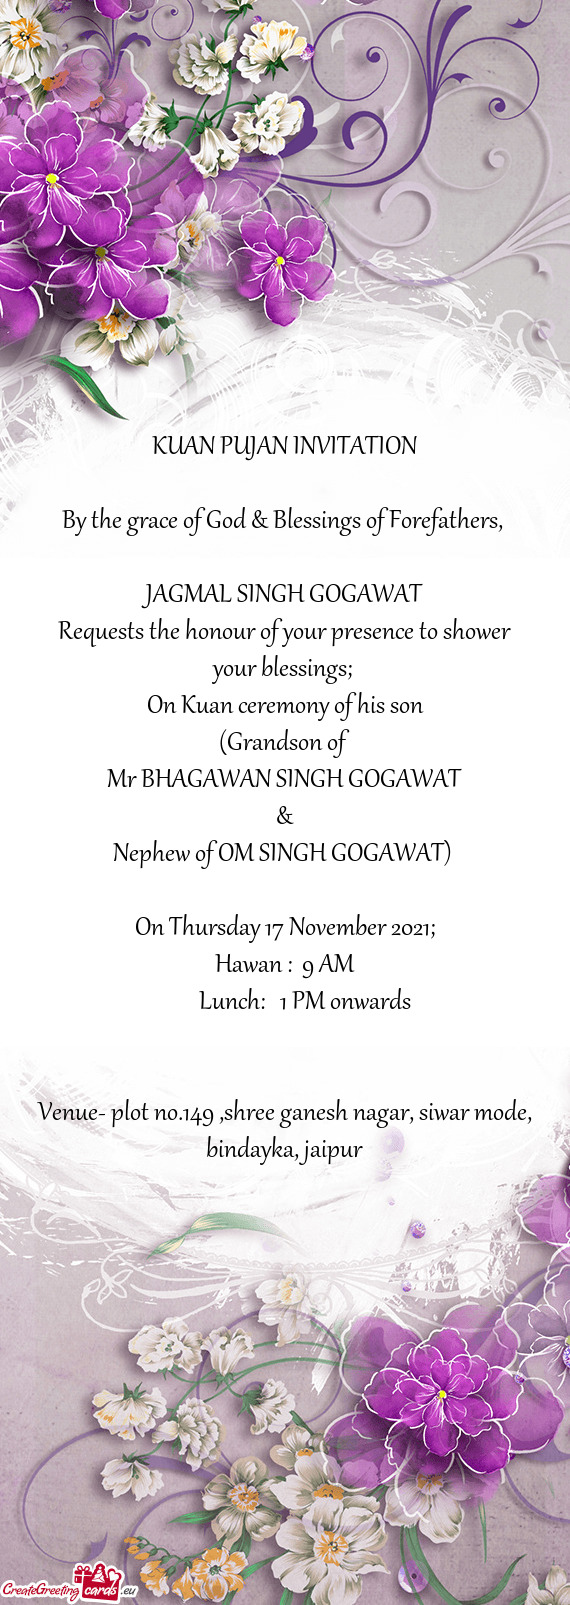 Mr BHAGAWAN SINGH GOGAWAT